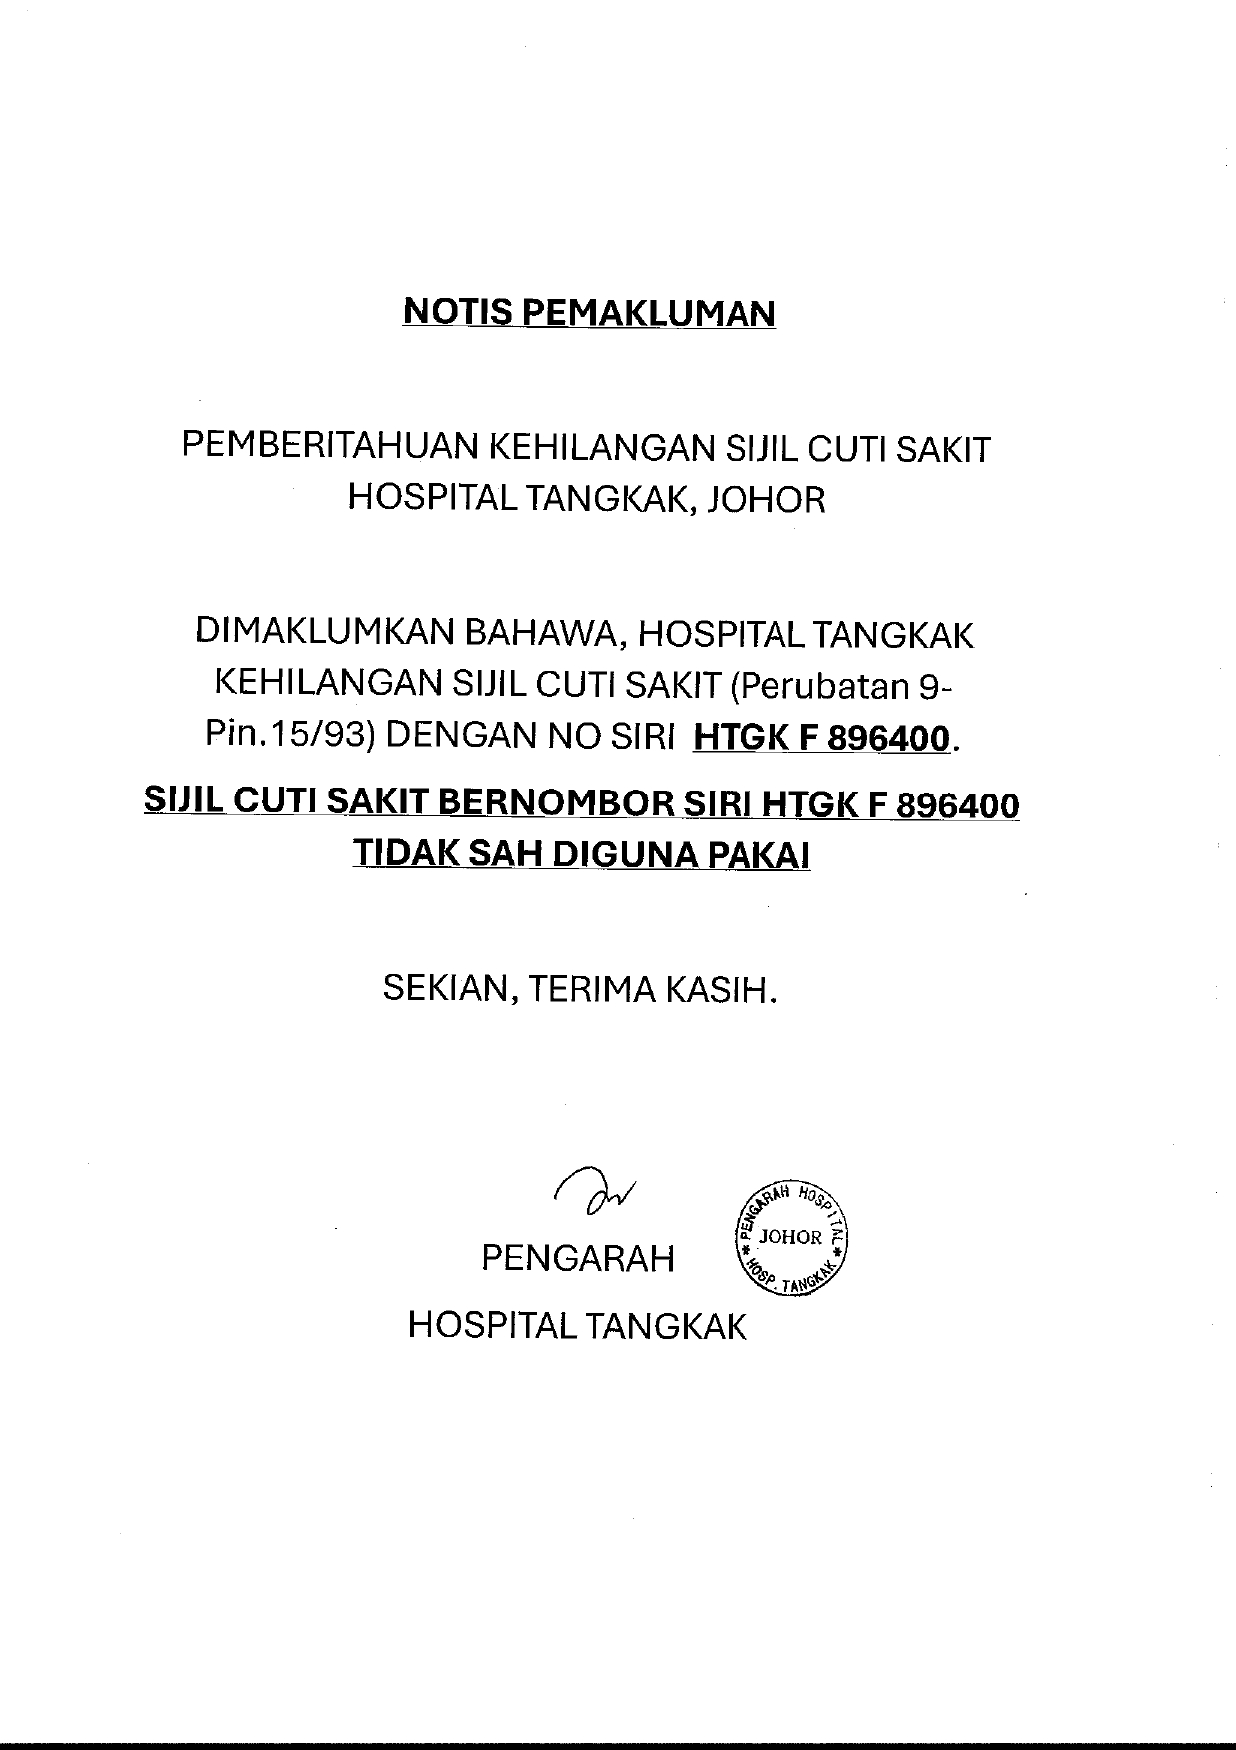 Notice from hospital tangkak